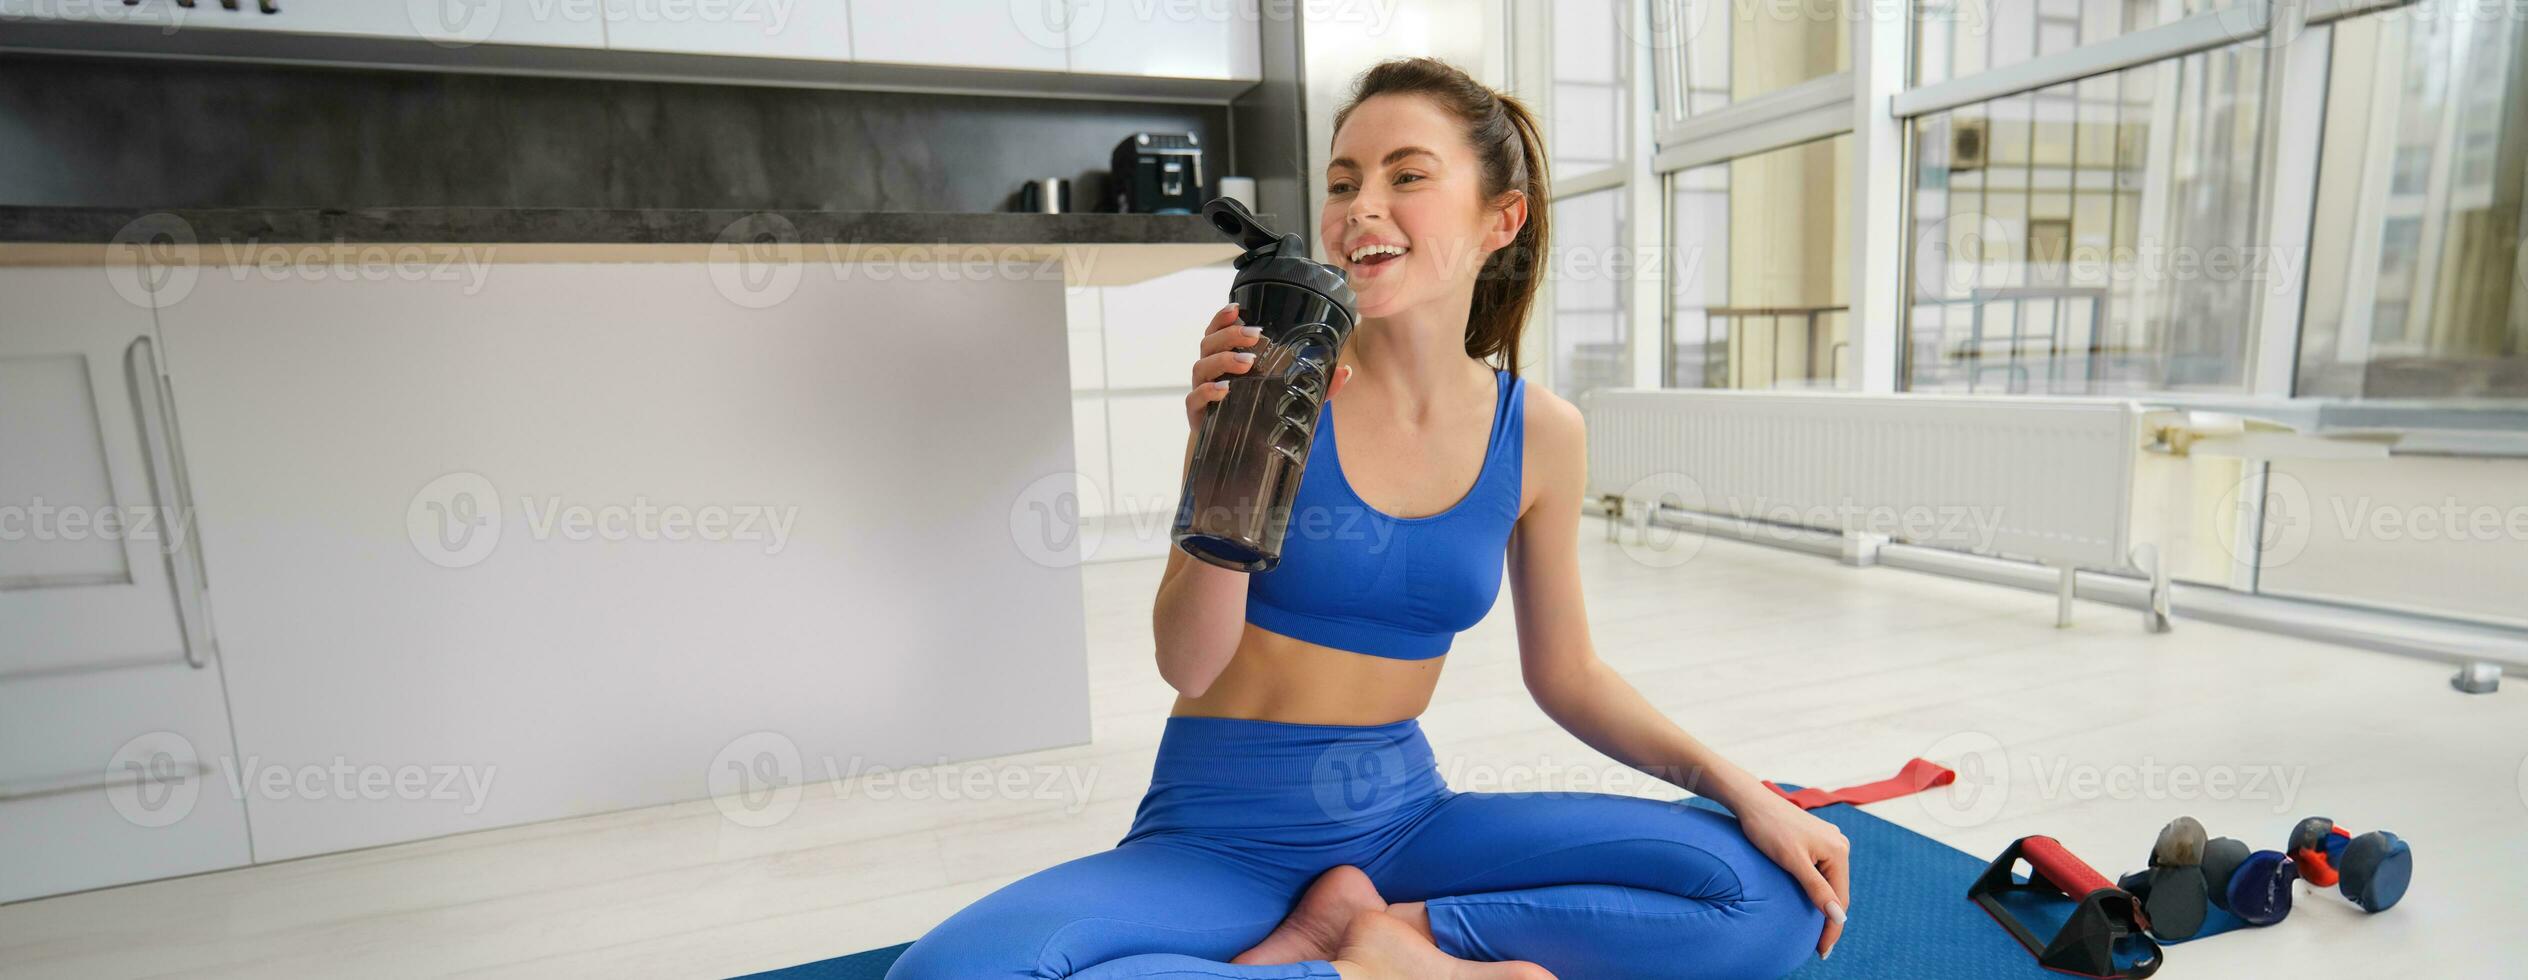 jung Frau Arbeiten aus von heim, Trinken Wasser während ihr Sport Ausbildung Session im Leben Zimmer, Sitzung auf Yoga Matte foto